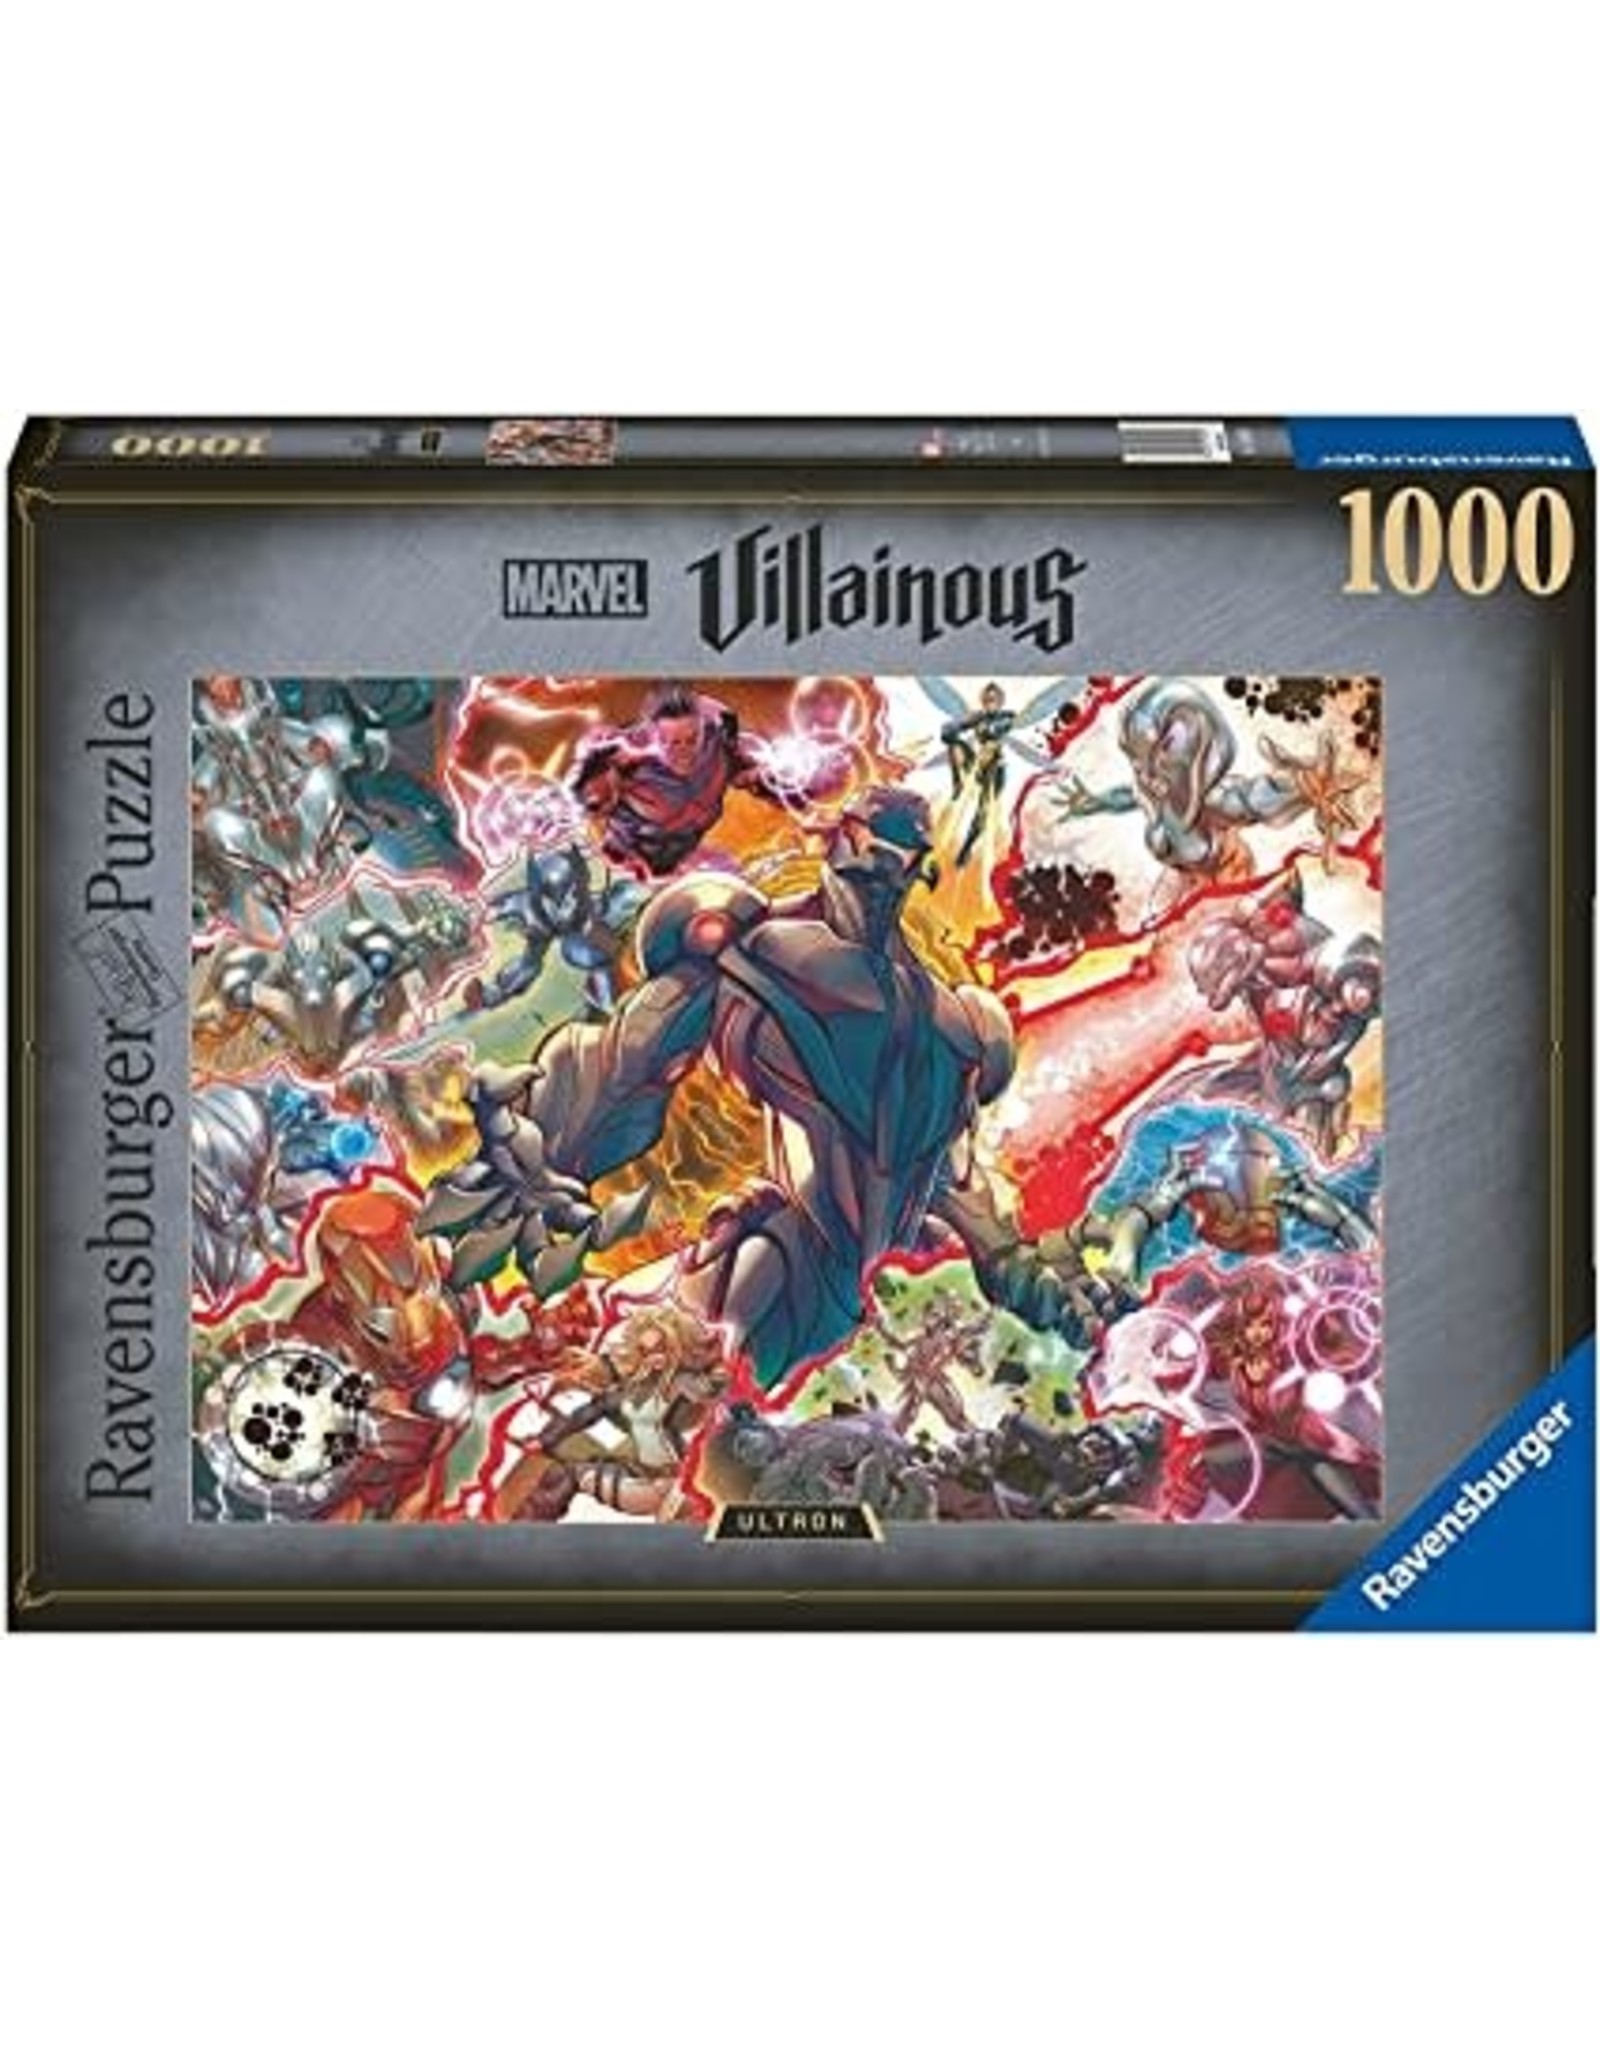 Marvel Villainous: Ultron 1000 pc